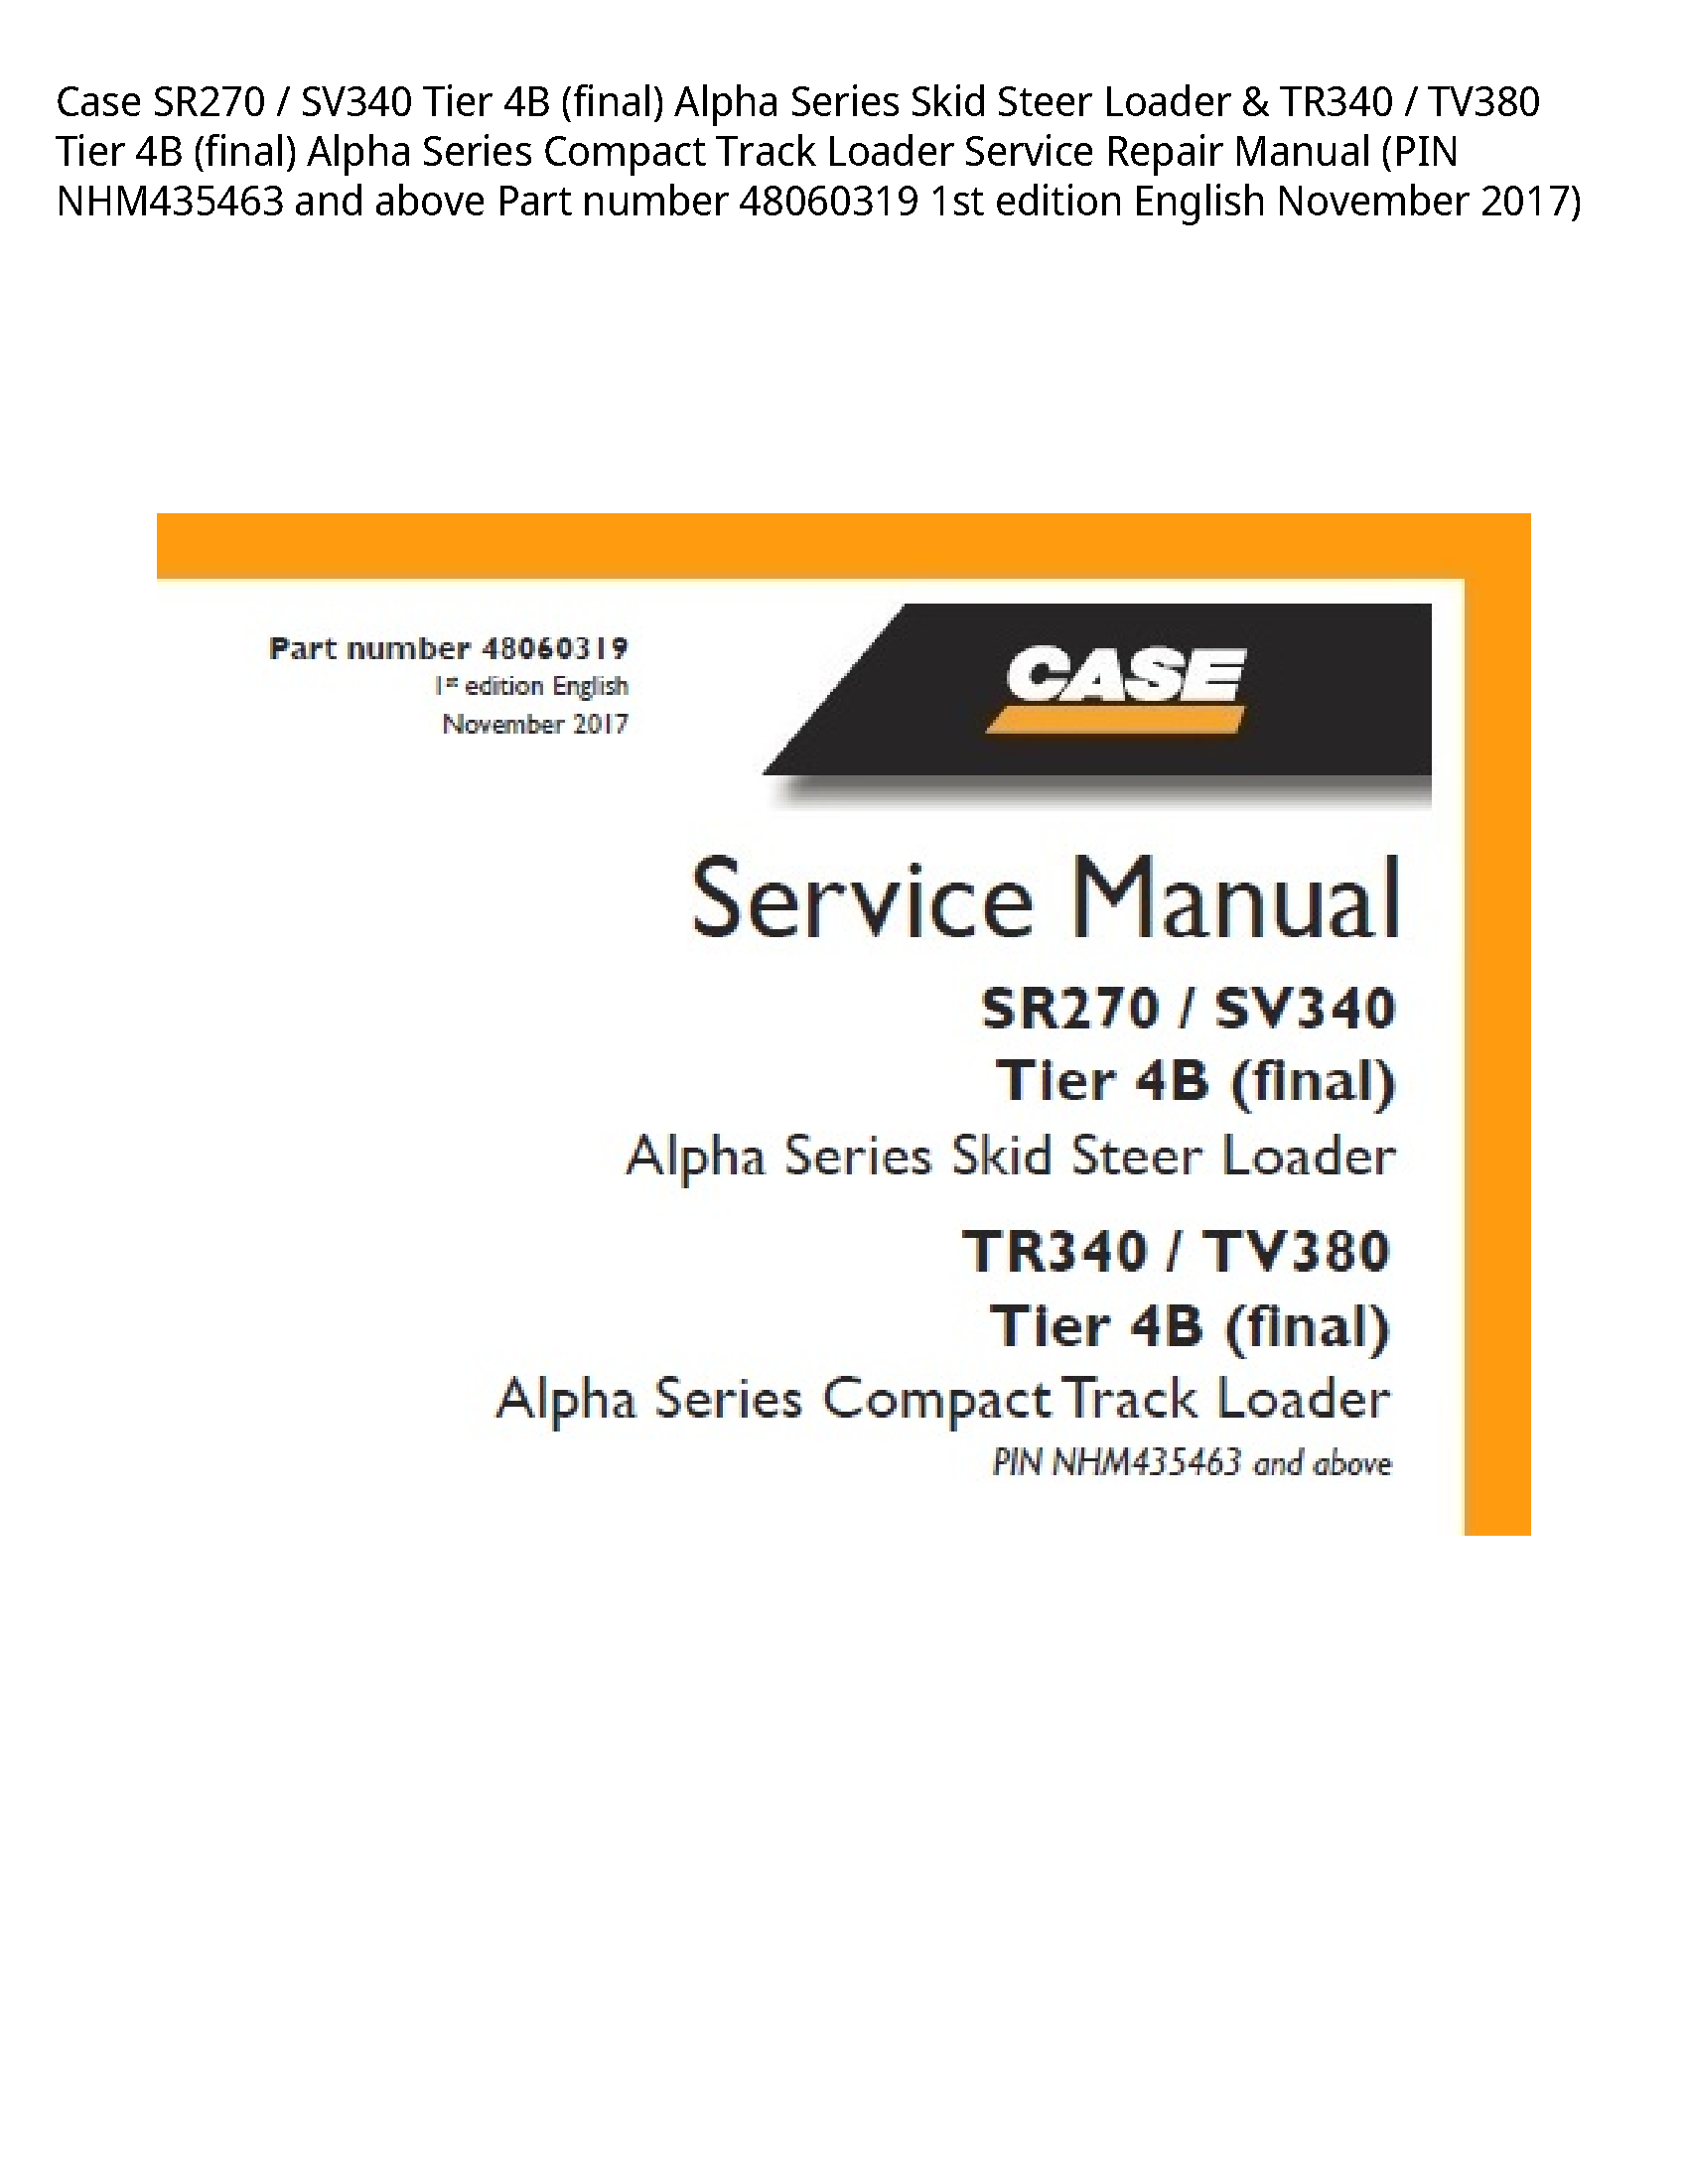 Case/Case IH SR270 Tier (final) Alpha Series Skid Steer Loader Tier (final) Alpha Series Compact Track Loader manual